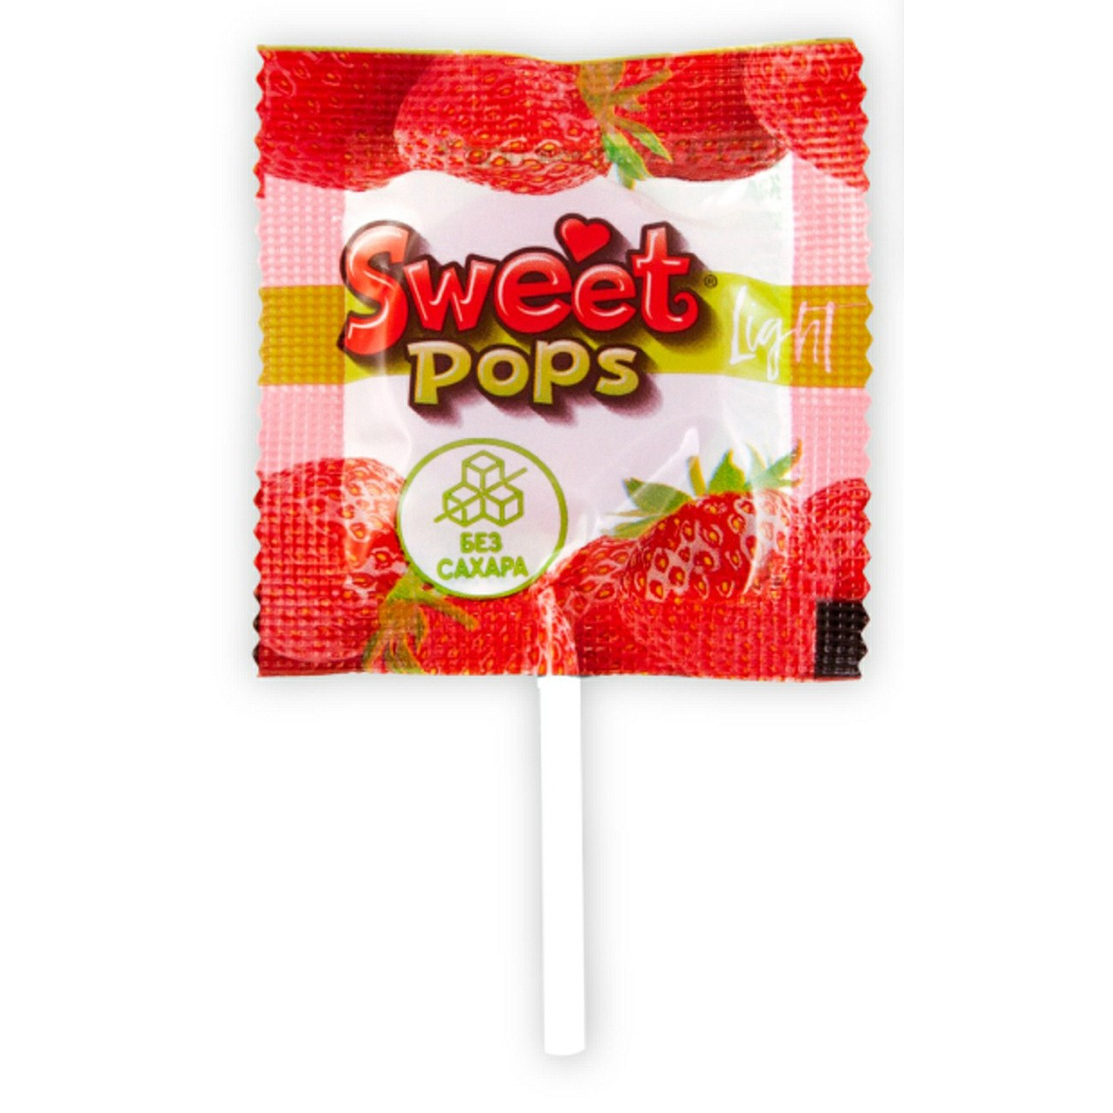 Карамель Sweet pops light без сахара 10 г в ассортименте карамель леденцовая sweet pops сердце в ассортименте 10 г